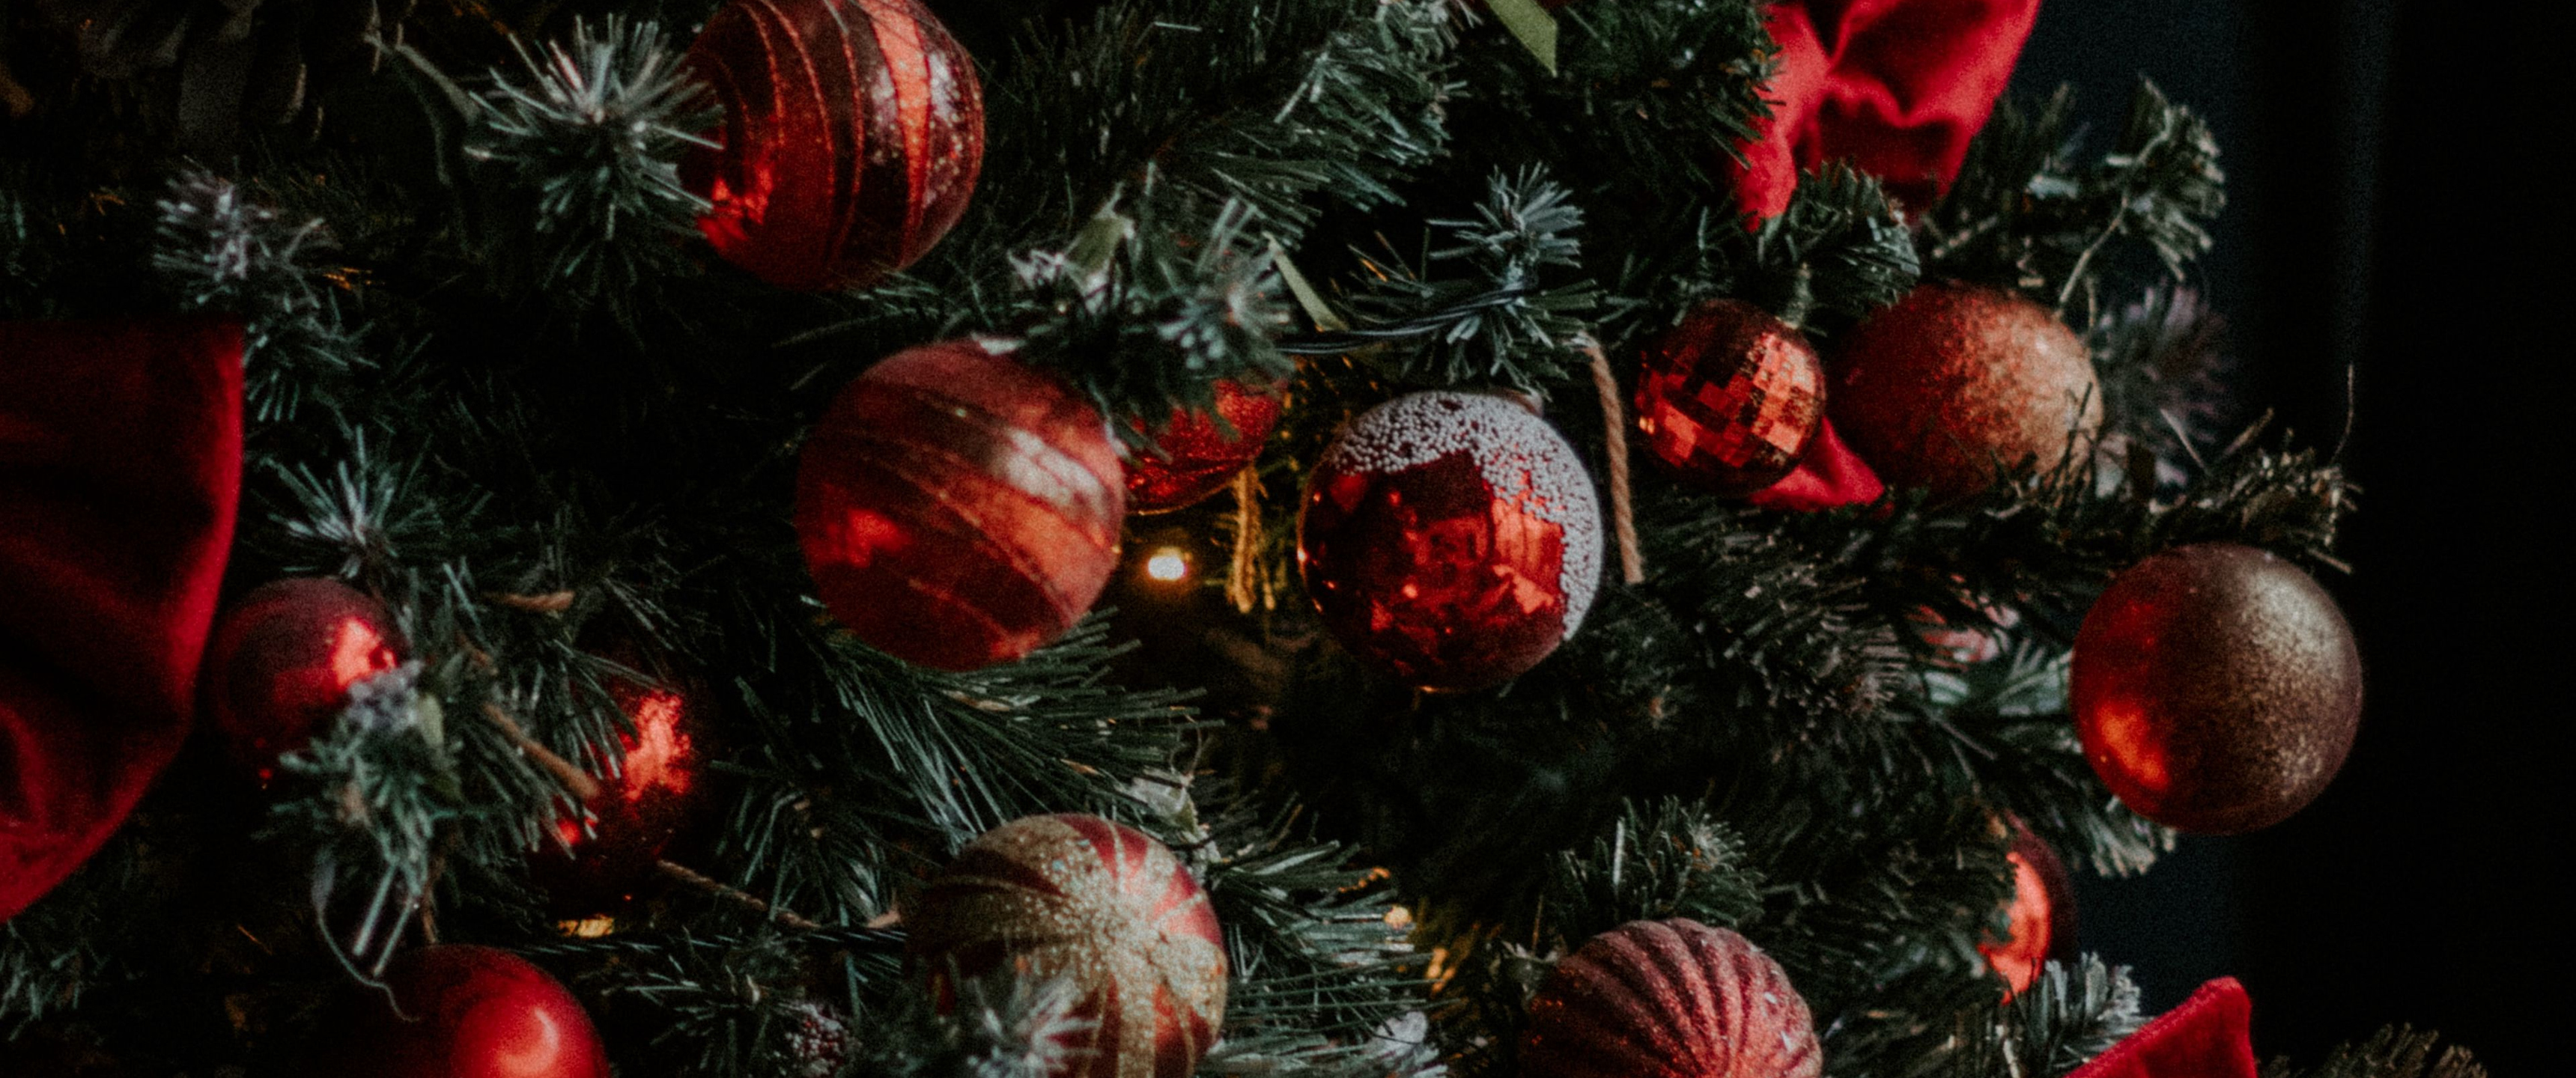 Hãy đón chào mùa Giáng Sinh ấm áp với những hình nền cực kỳ đáng yêu! Wallpaper Giáng Sinh của chúng tôi sẽ đem đến cho bạn không khí lễ hội ấm áp và thú vị. Hãy thưởng thức bức tranh màu sắc tuyệt đẹp này và tìm hiểu thêm về những cách thức để kết hợp nó trong thiết kế của bạn.